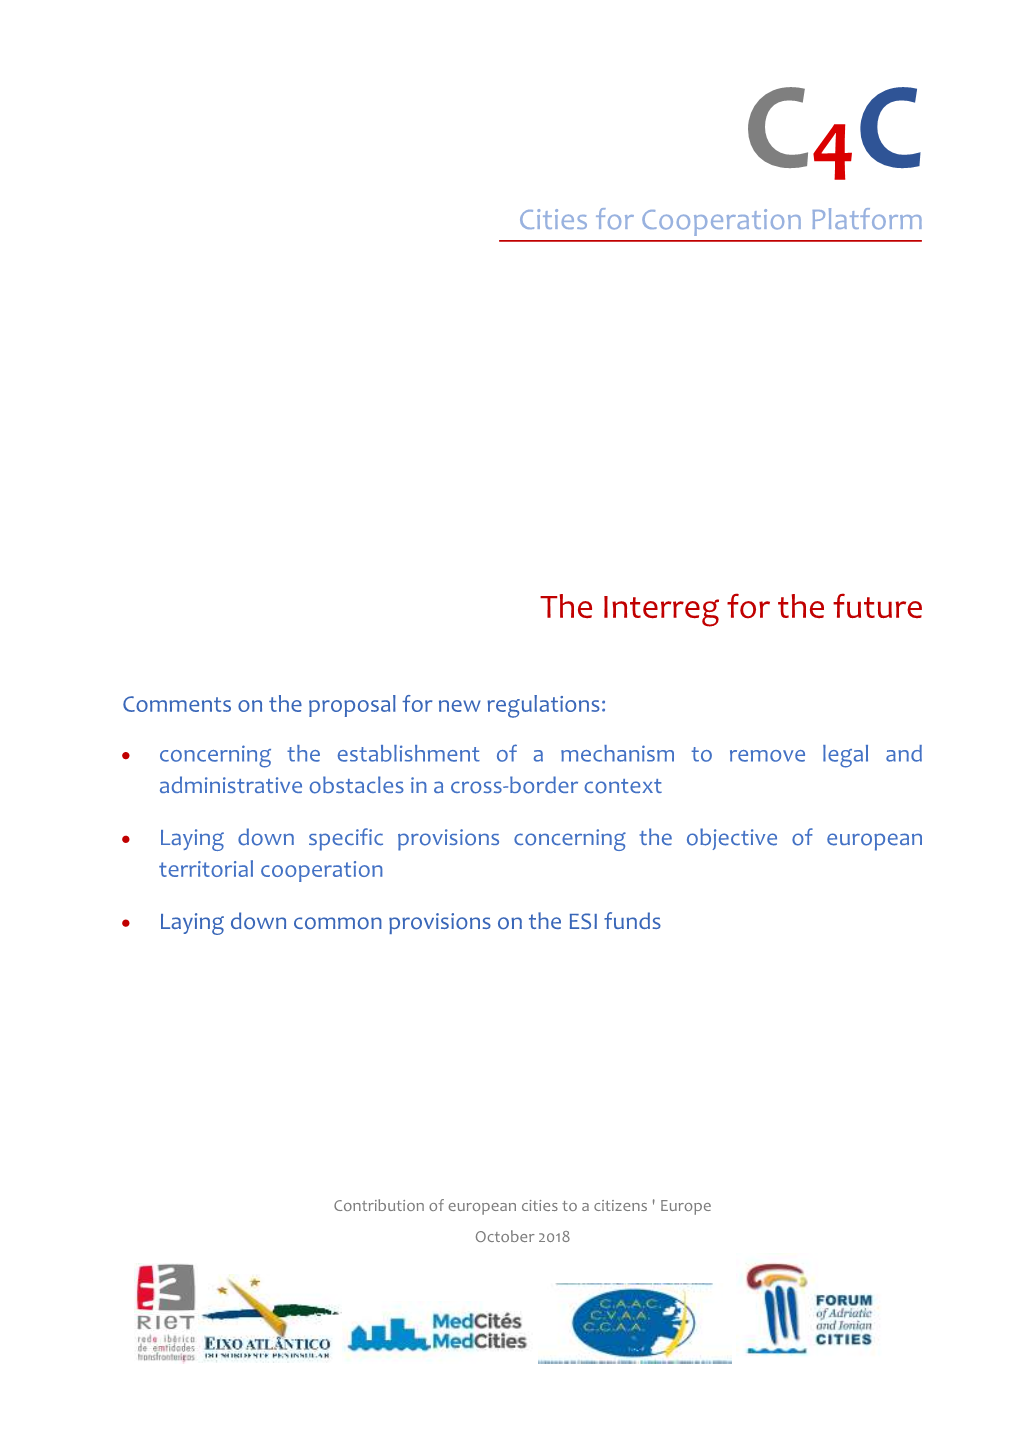 The Interreg for the Future